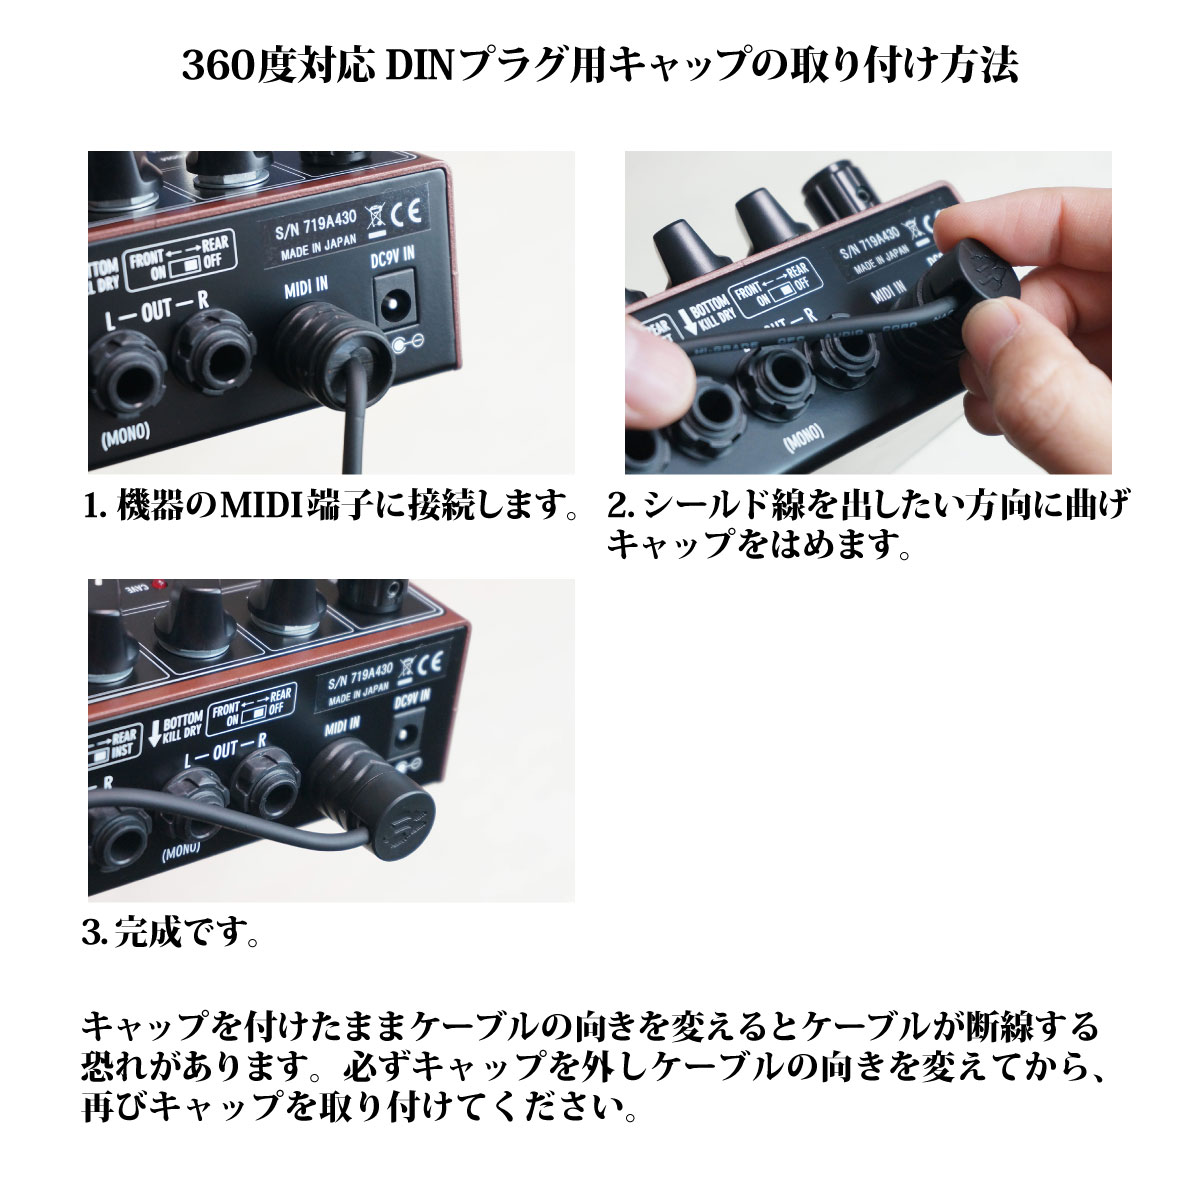 Free The Tone MIDI CABLE CM-3510 80cm MIDIケーブル 新品[フリーザトーン]